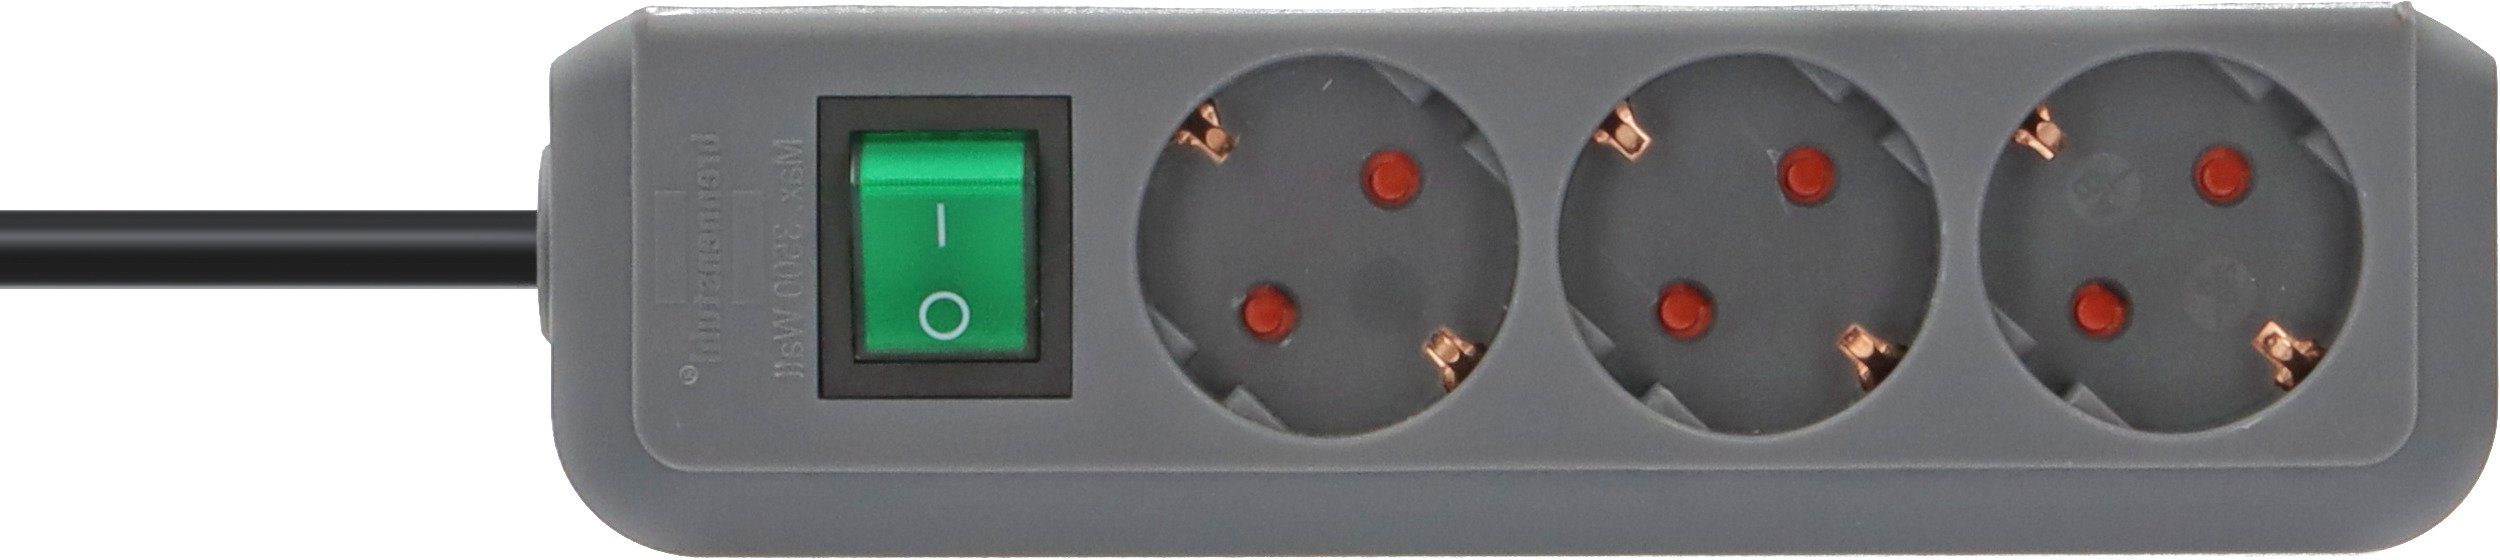 Brennenstuhl Eco-Line Steckdosenleiste 3-fach (Kabellänge 1,5 m), mit erhöhtem Berührungsschutz und Schalter